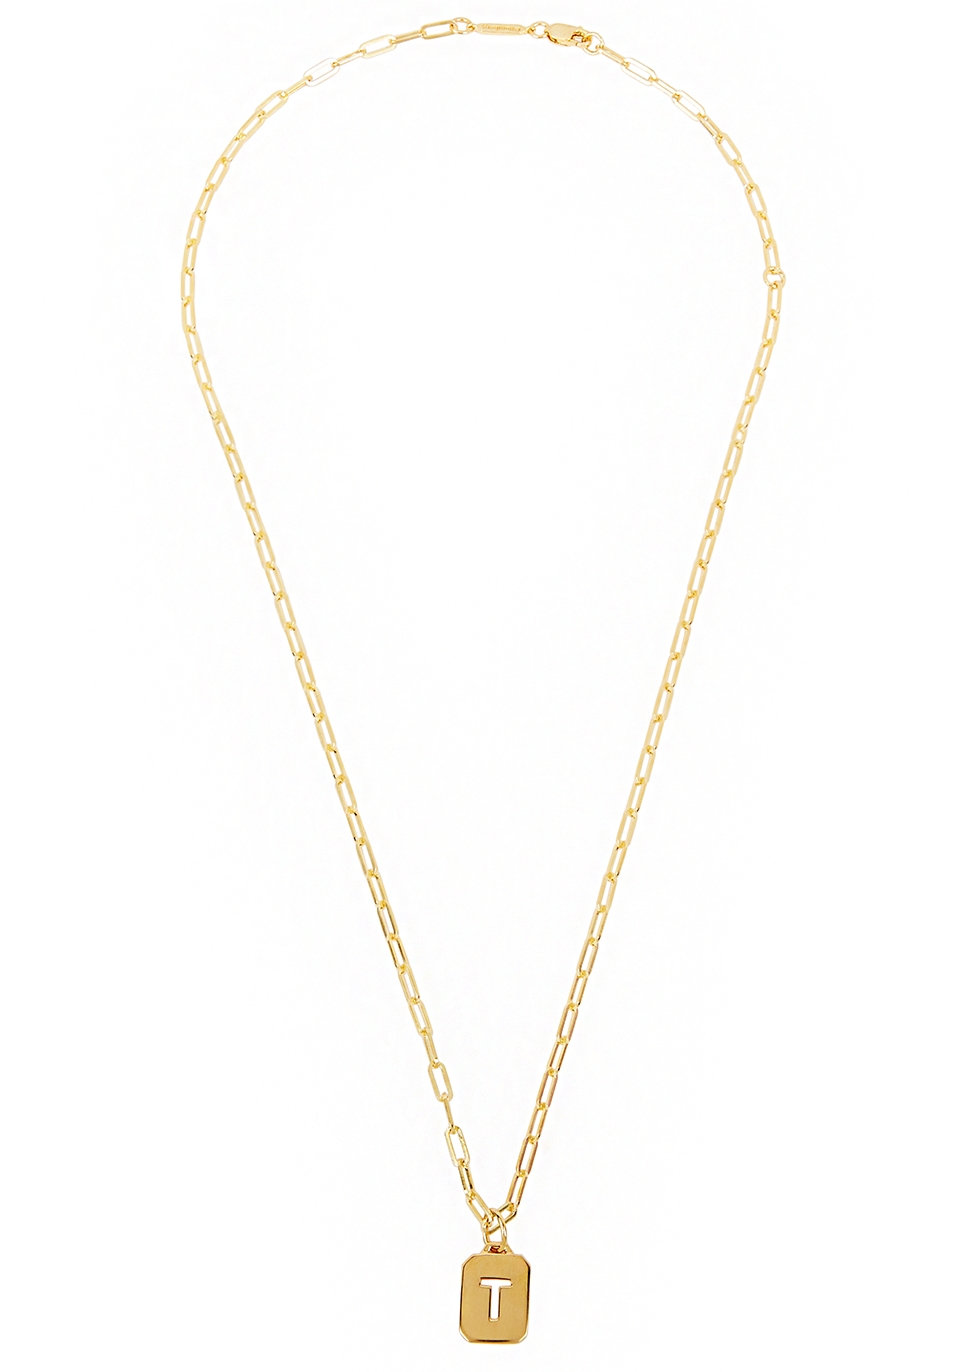 T gold vermeil chain necklace